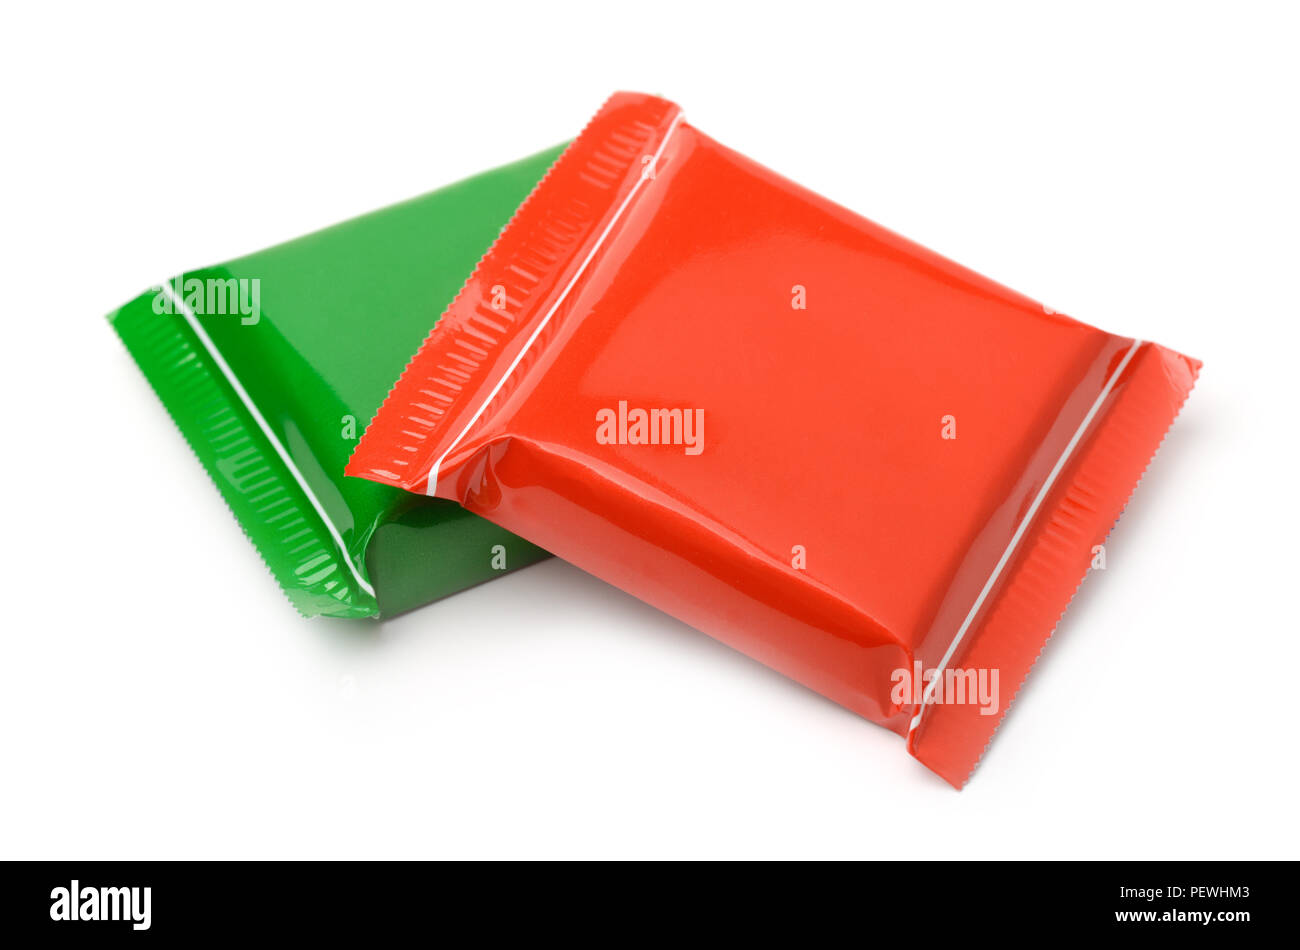 Le rouge et le vert des sacs en plastique alimentaire isolated on white Banque D'Images